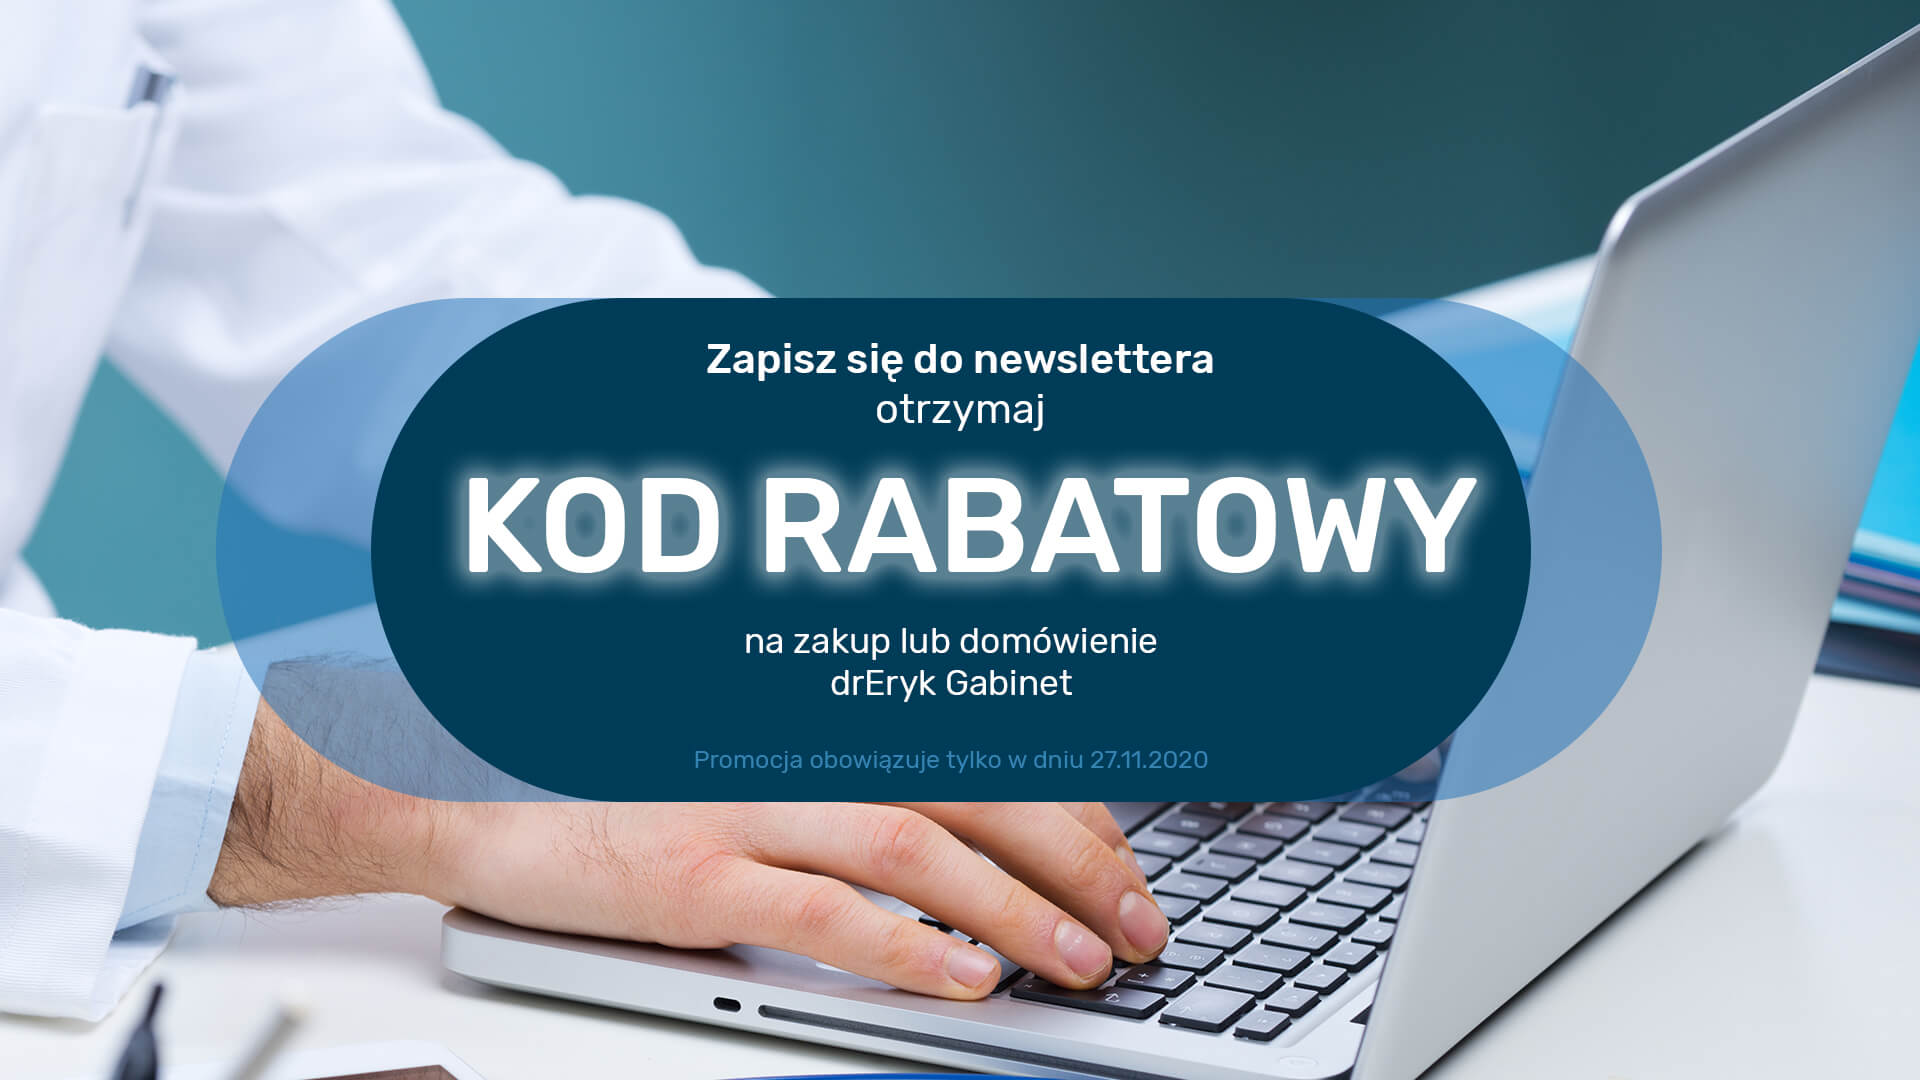 Promocja w drEryk Gabinet - banner informacyjny